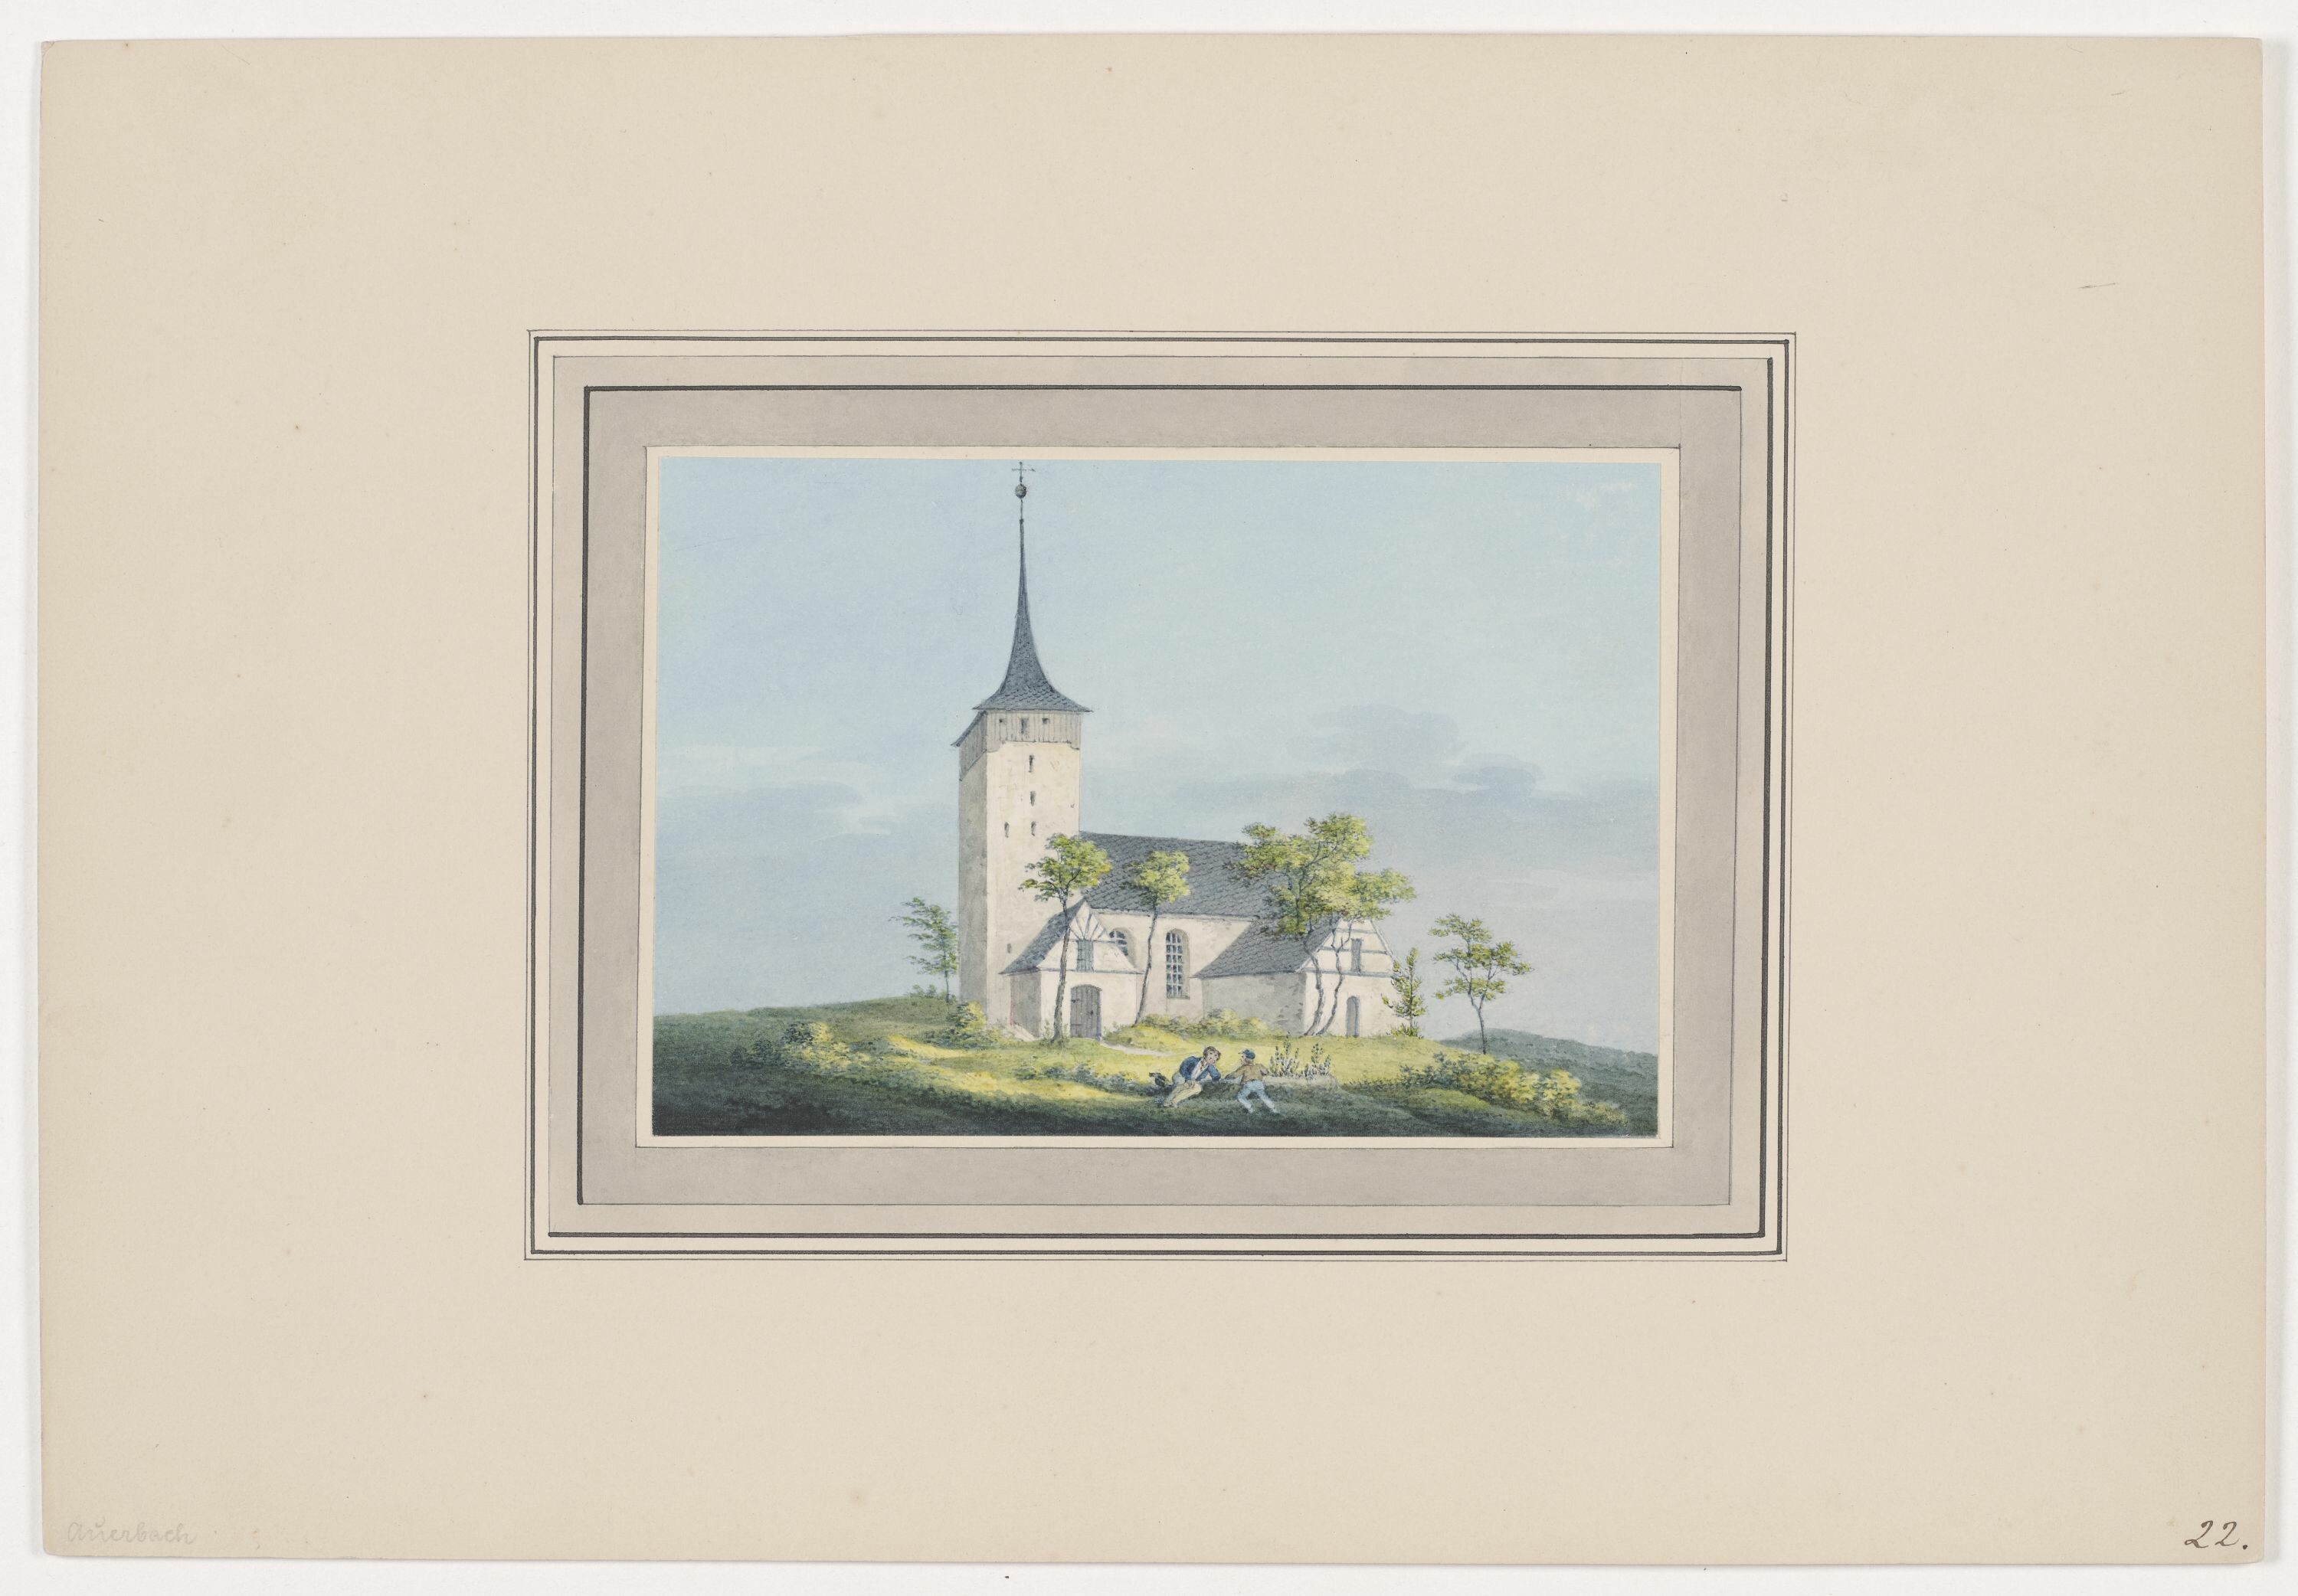 Kirche zu Auerbach, aus Mappe: Dorfkirchen der Ephorie Zwickau, Blatt 22 (KUNSTSAMMLUNGEN ZWICKAU Max-Pechstein-Museum RR-F)